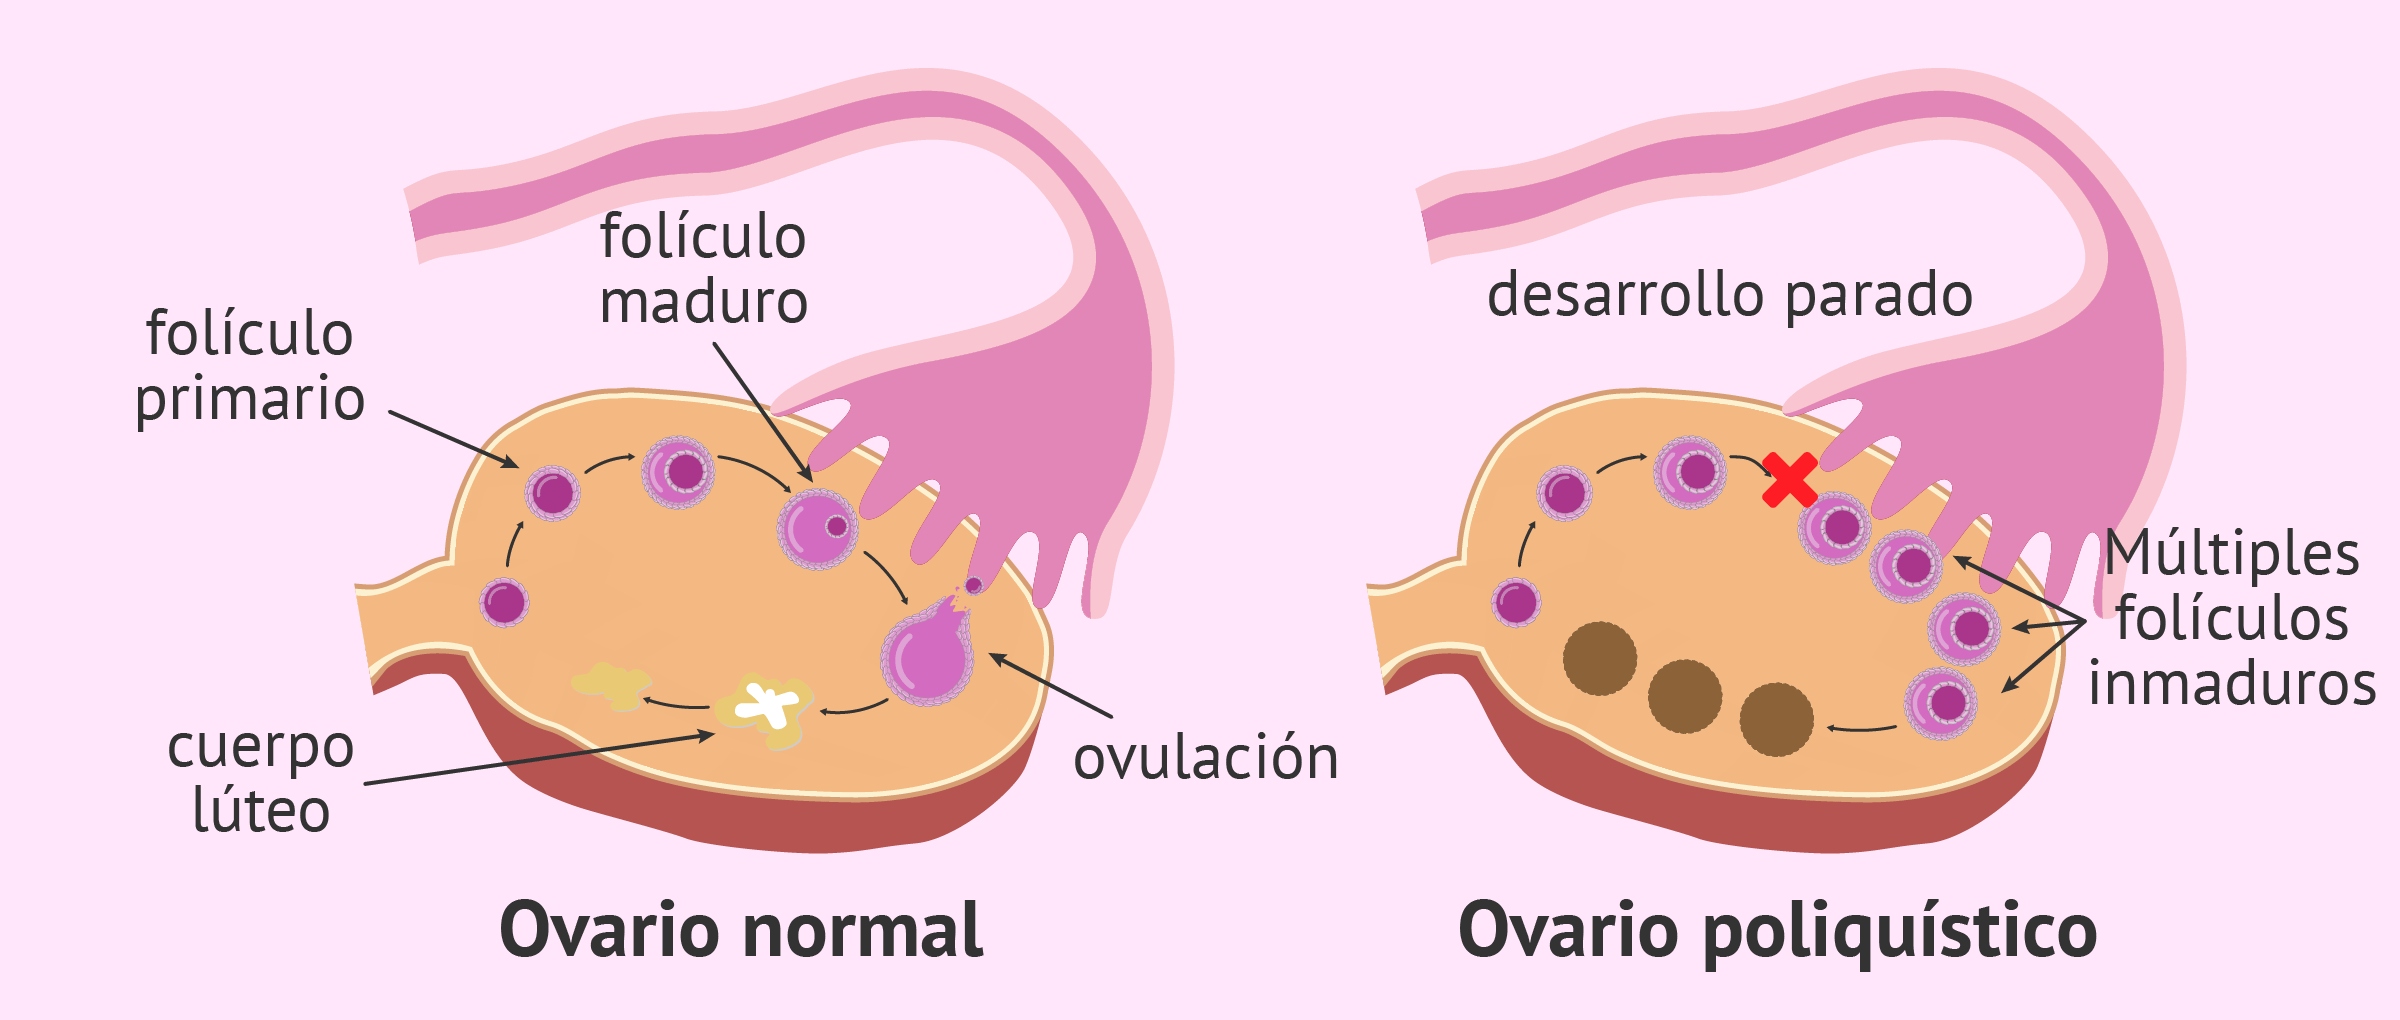 Síndrome de Ovarios Poliquísticos Guadalajara síndrome de ovarios poliquísticos guadalajara Síndrome de Ovarios Poliquísticos Guadalajara GINE 3 1